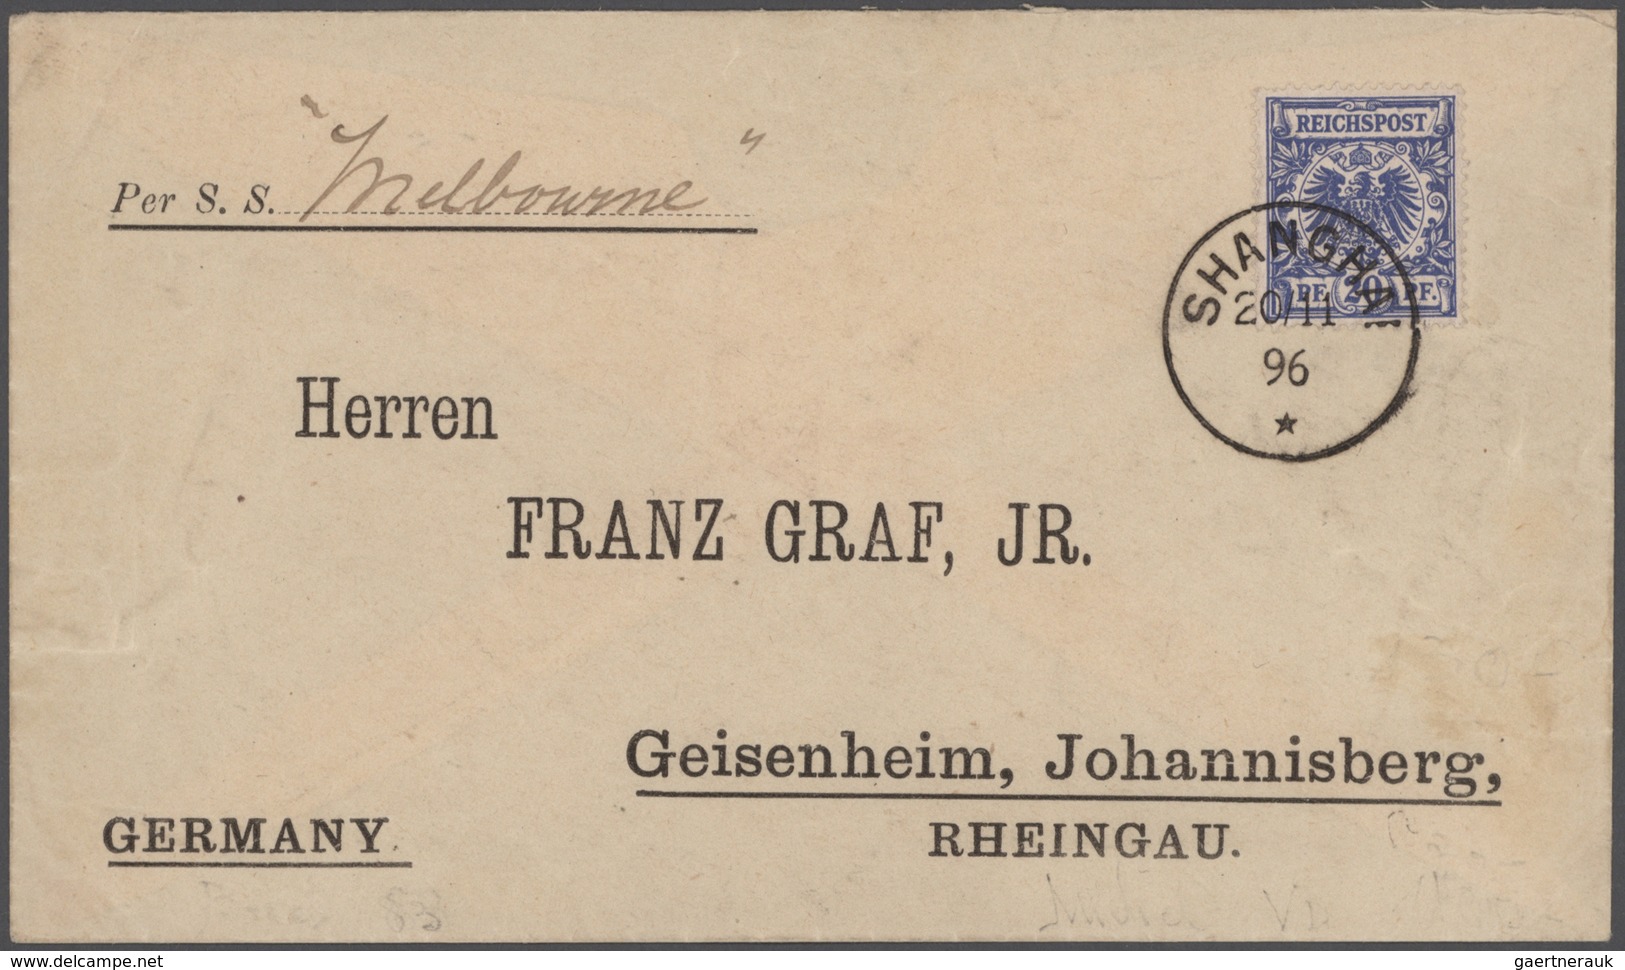 Deutsche Kolonien: 1890-1920, Posten mit Marken auf Steckseiten, dabei auch etliche Höchstwerte, daz